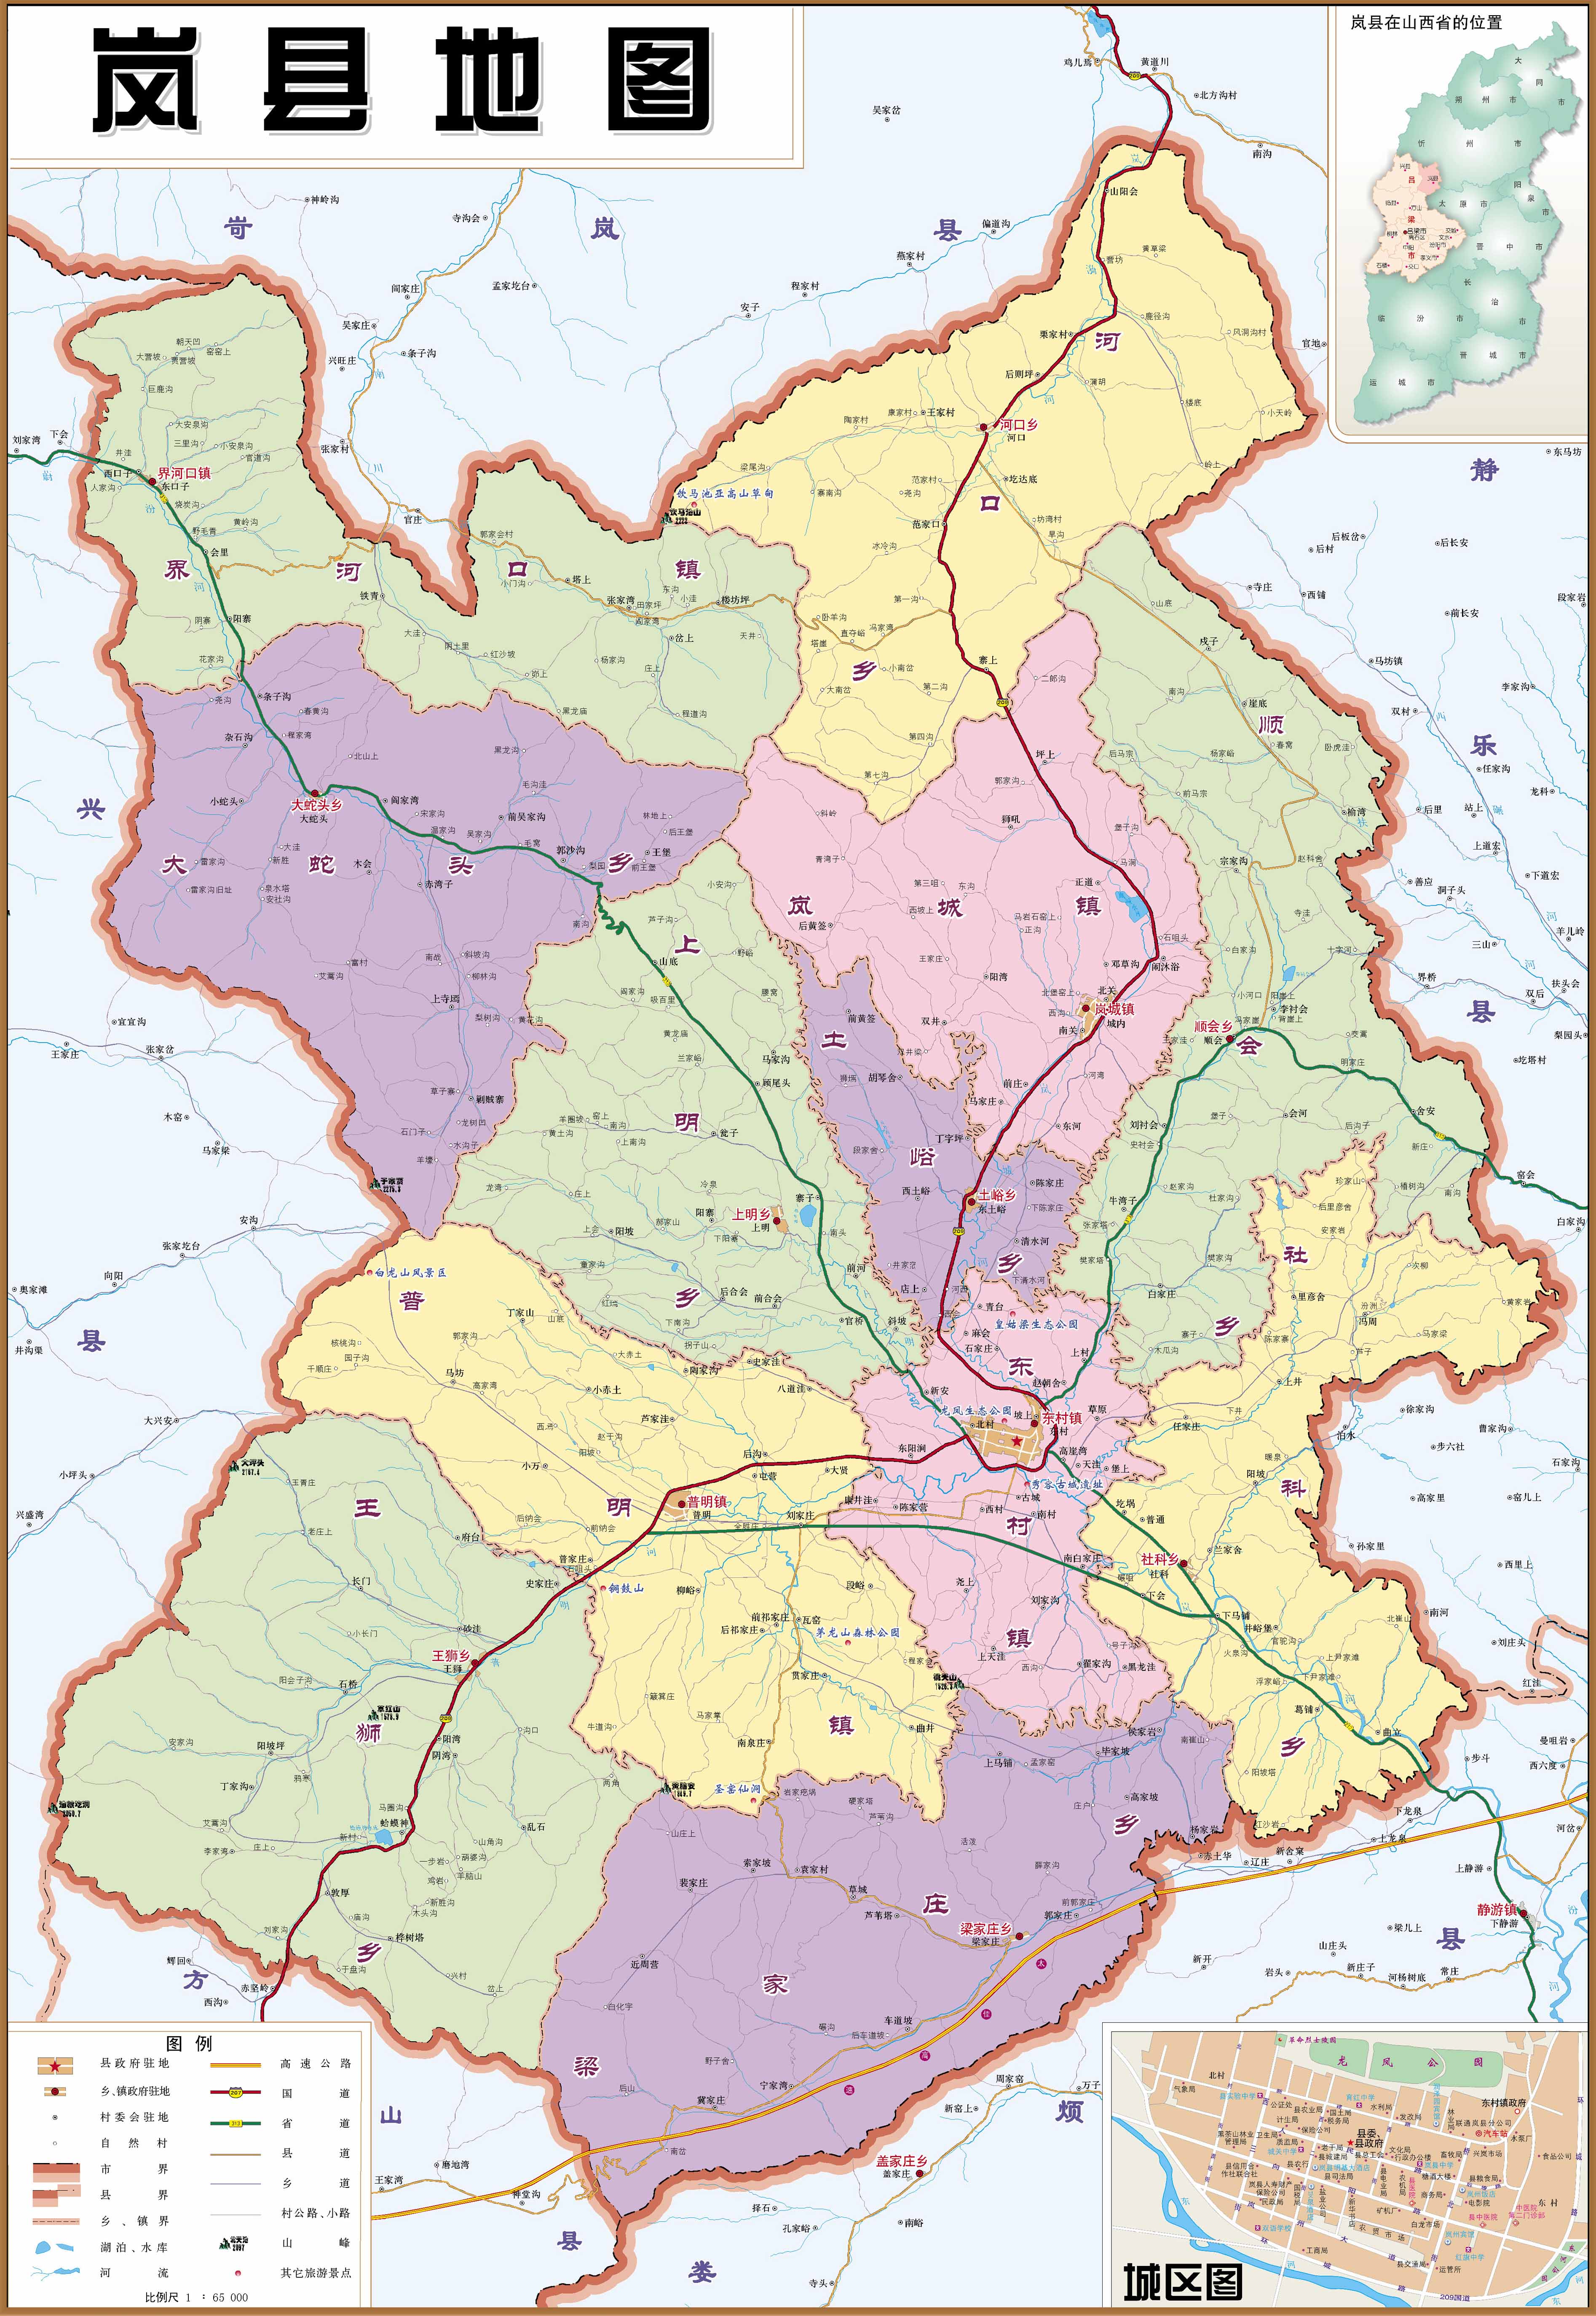 吕梁市 上一幅地图: 方山县地图 | 吕梁市 | 下一幅地图: 石楼县地图图片